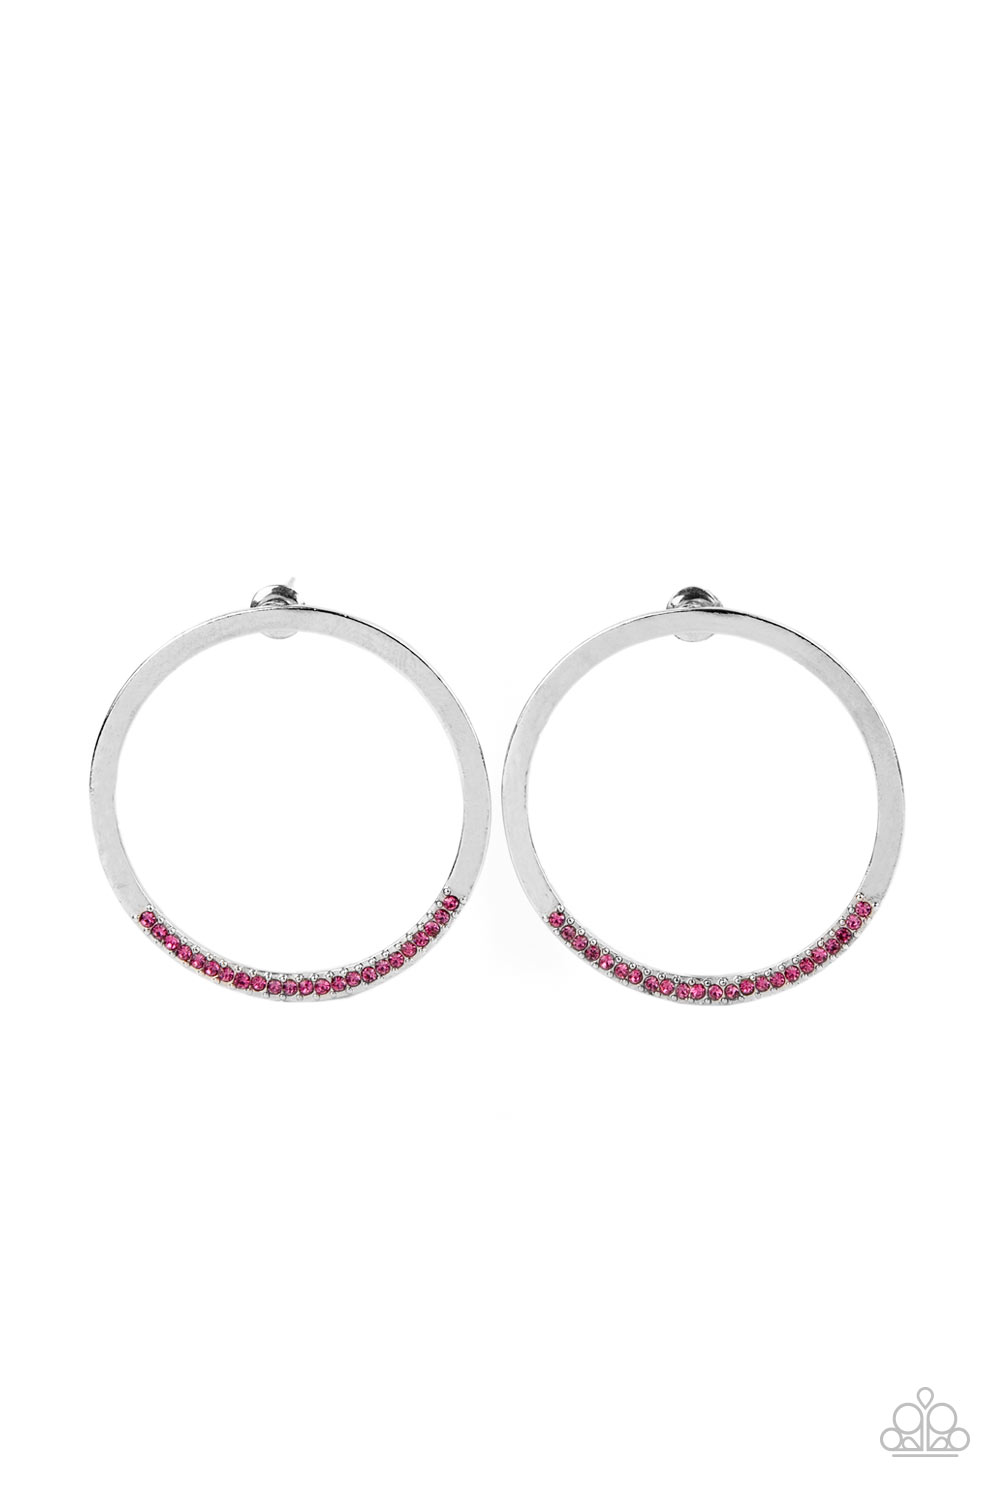 Spot On Opulence Pink Earrings - Paparazzi